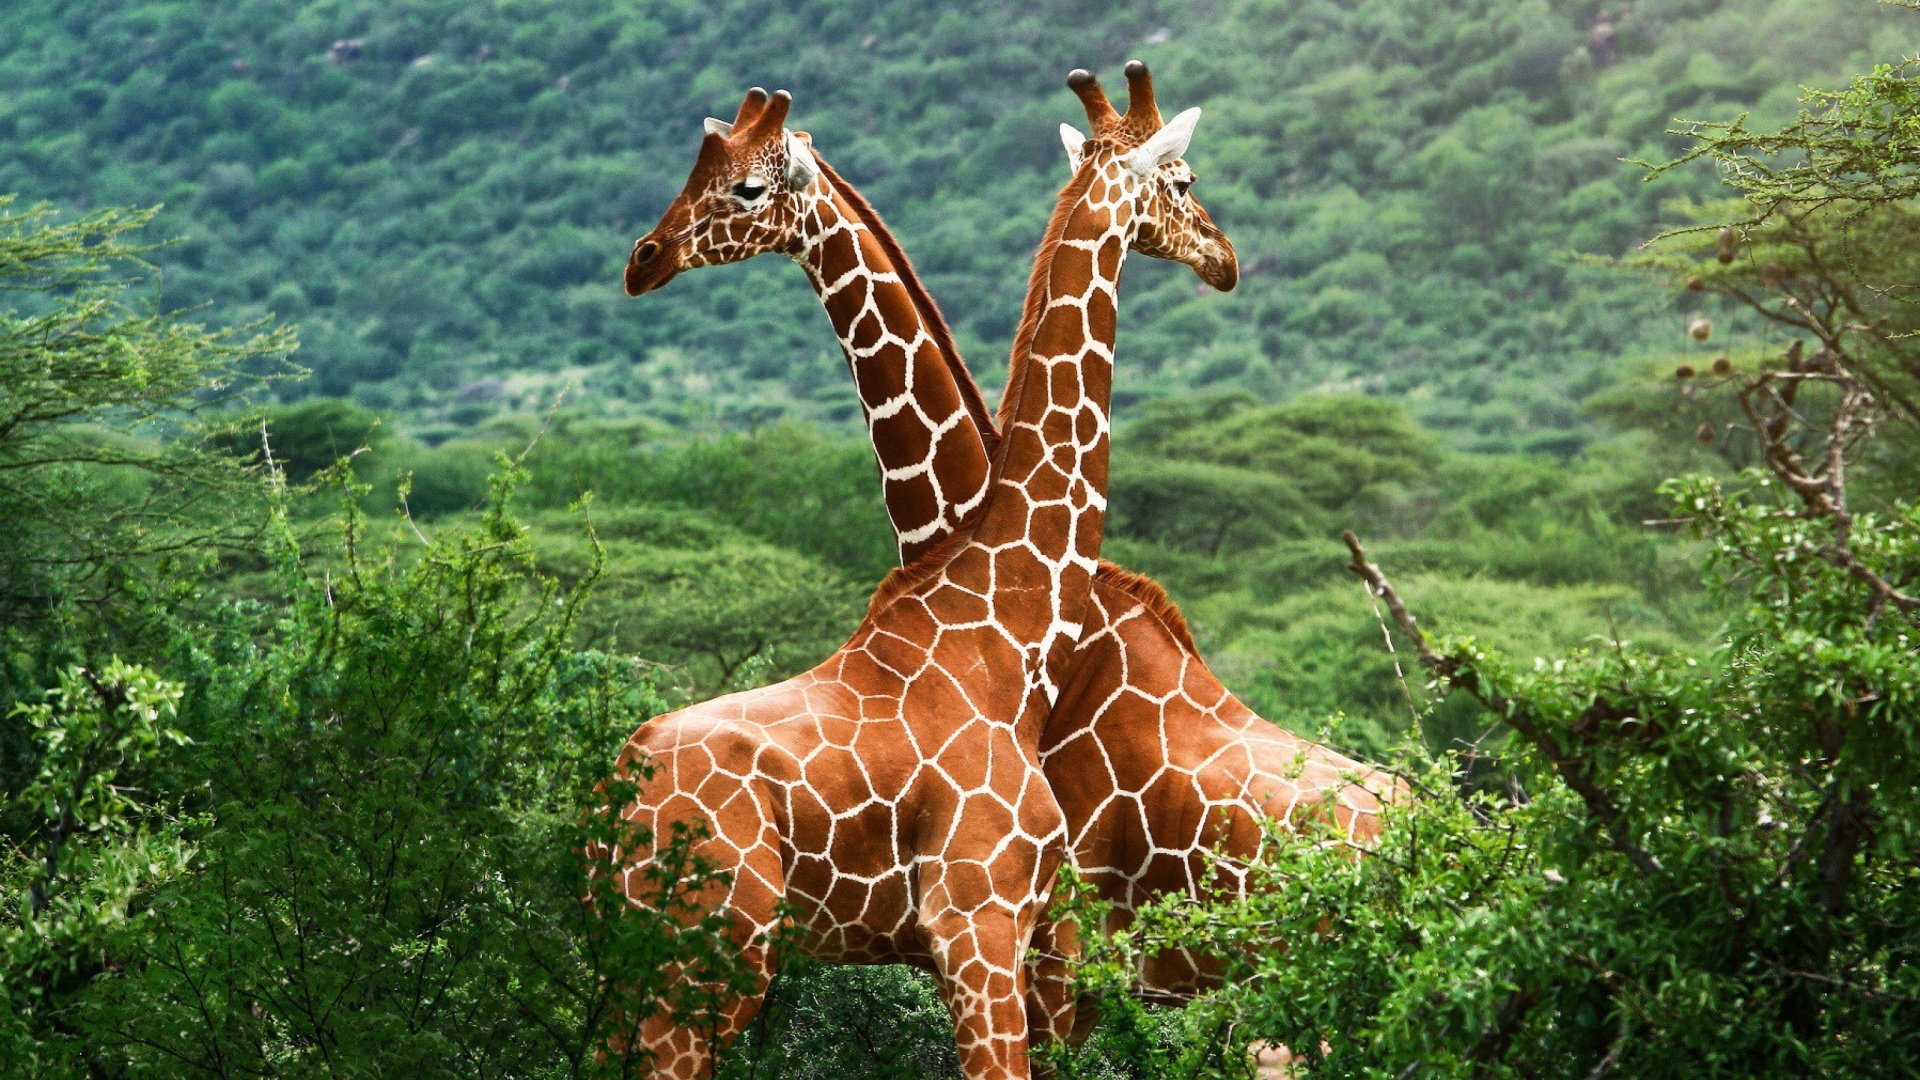 Sfondi Giraffes in The Zambezi Valley, Zambia 1920x1080